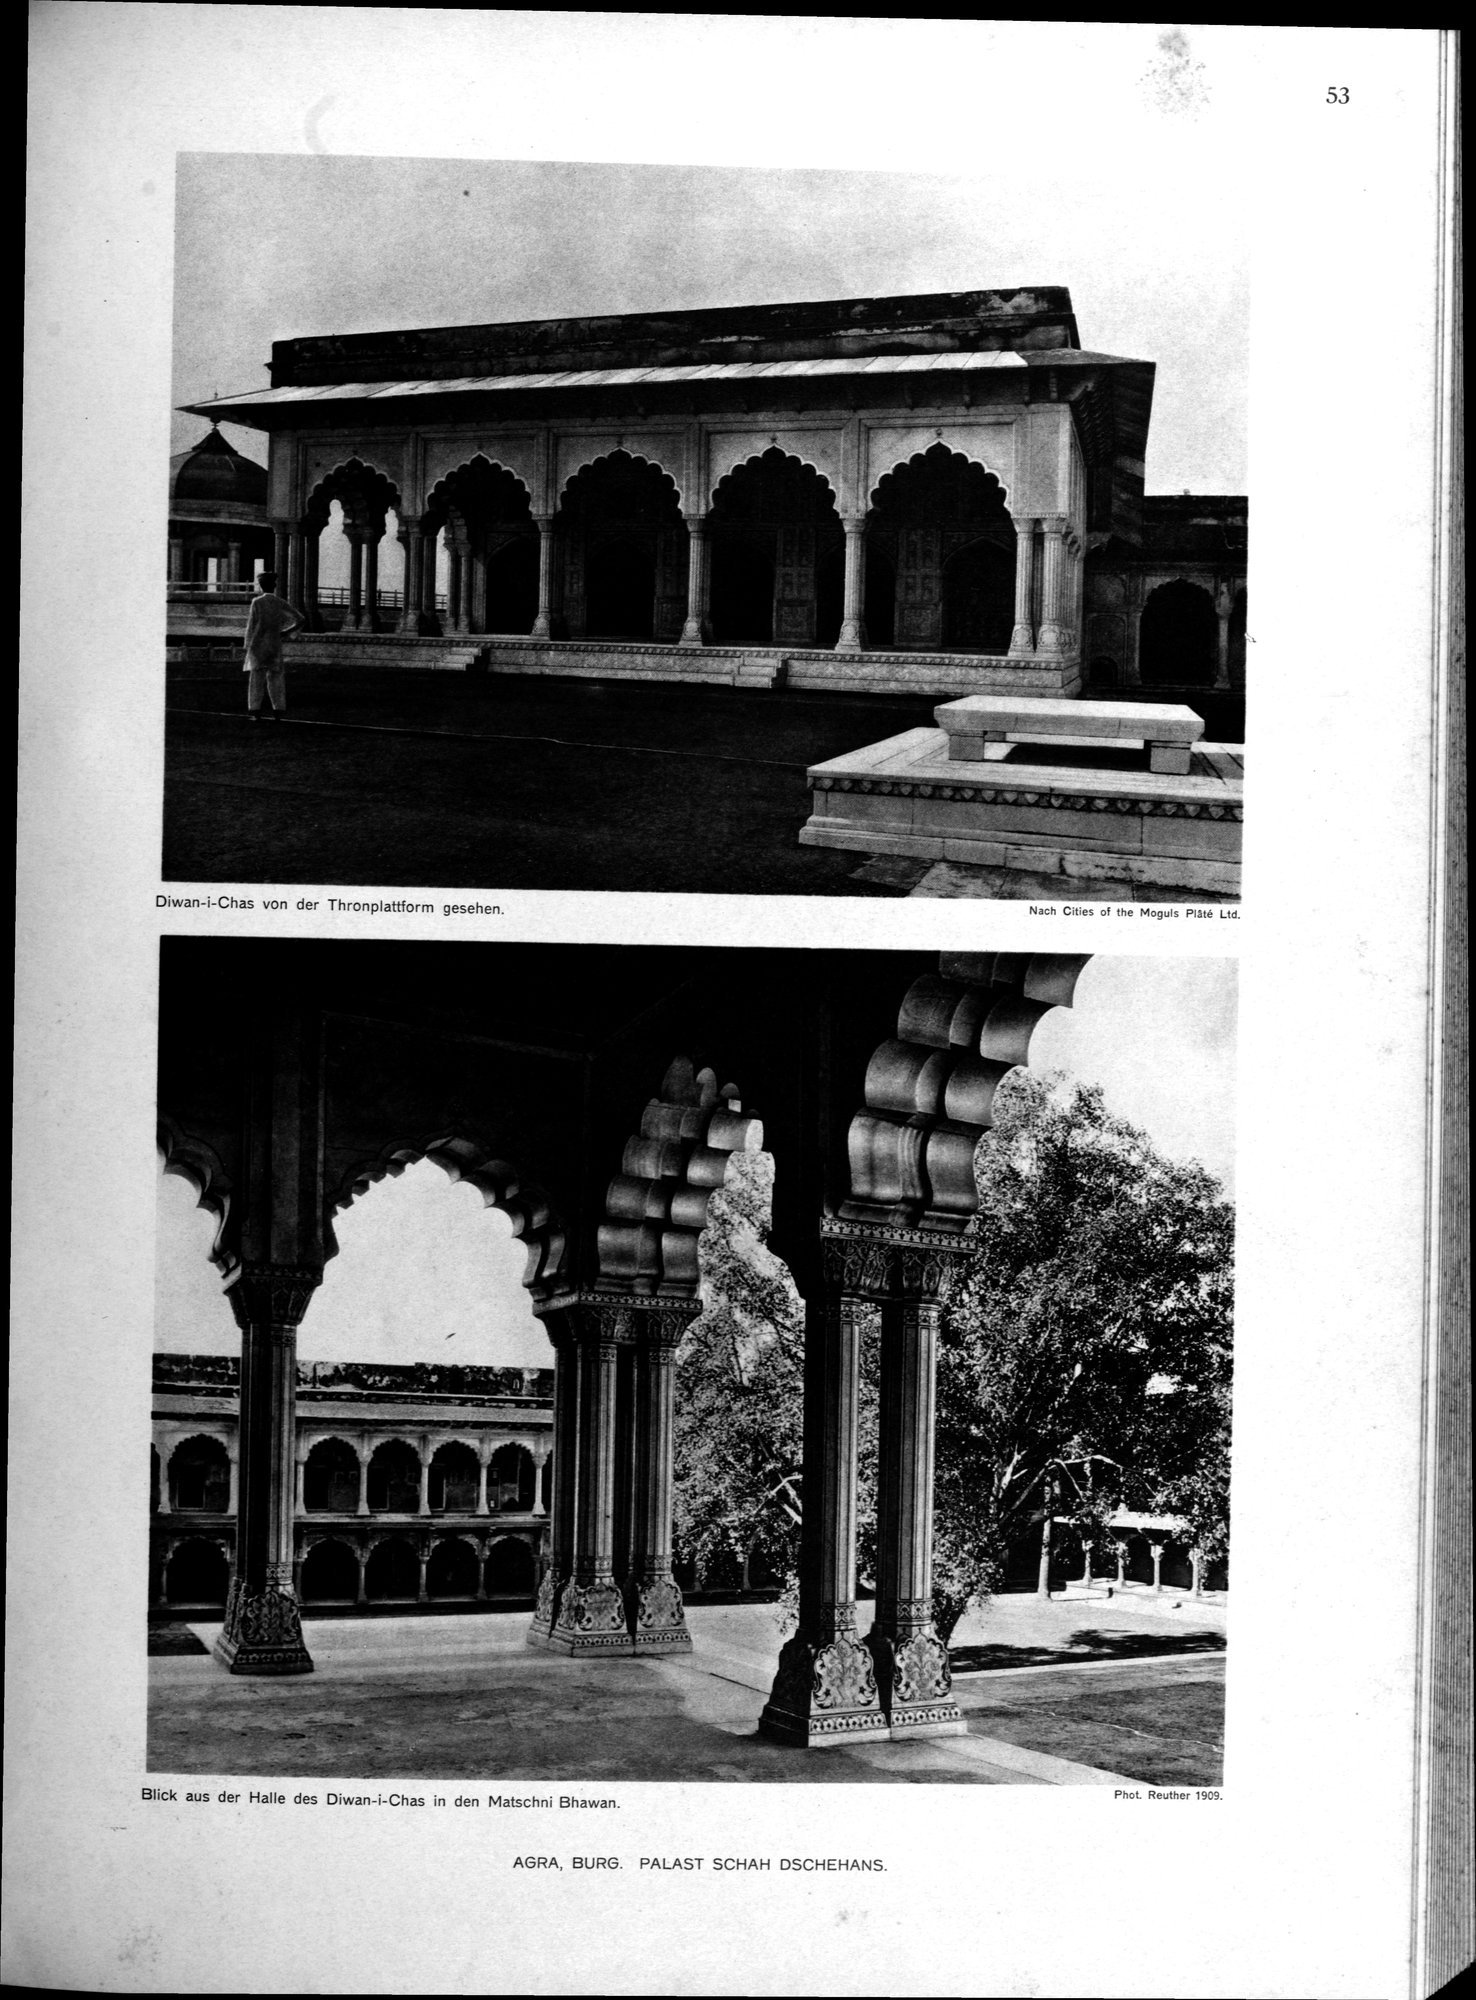 Indische Palaste und Wohnhauser : vol.1 / Page 169 (Grayscale High Resolution Image)